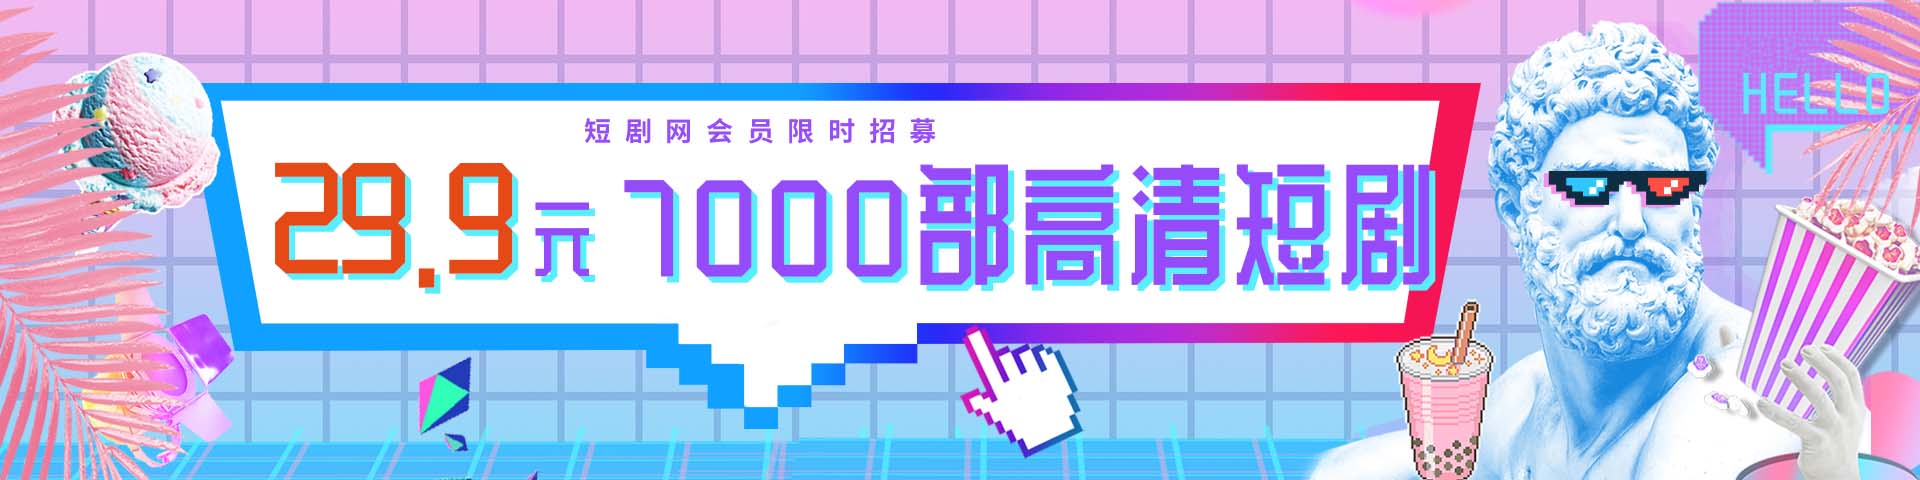 短剧网pay020.com-免费高清短剧下载